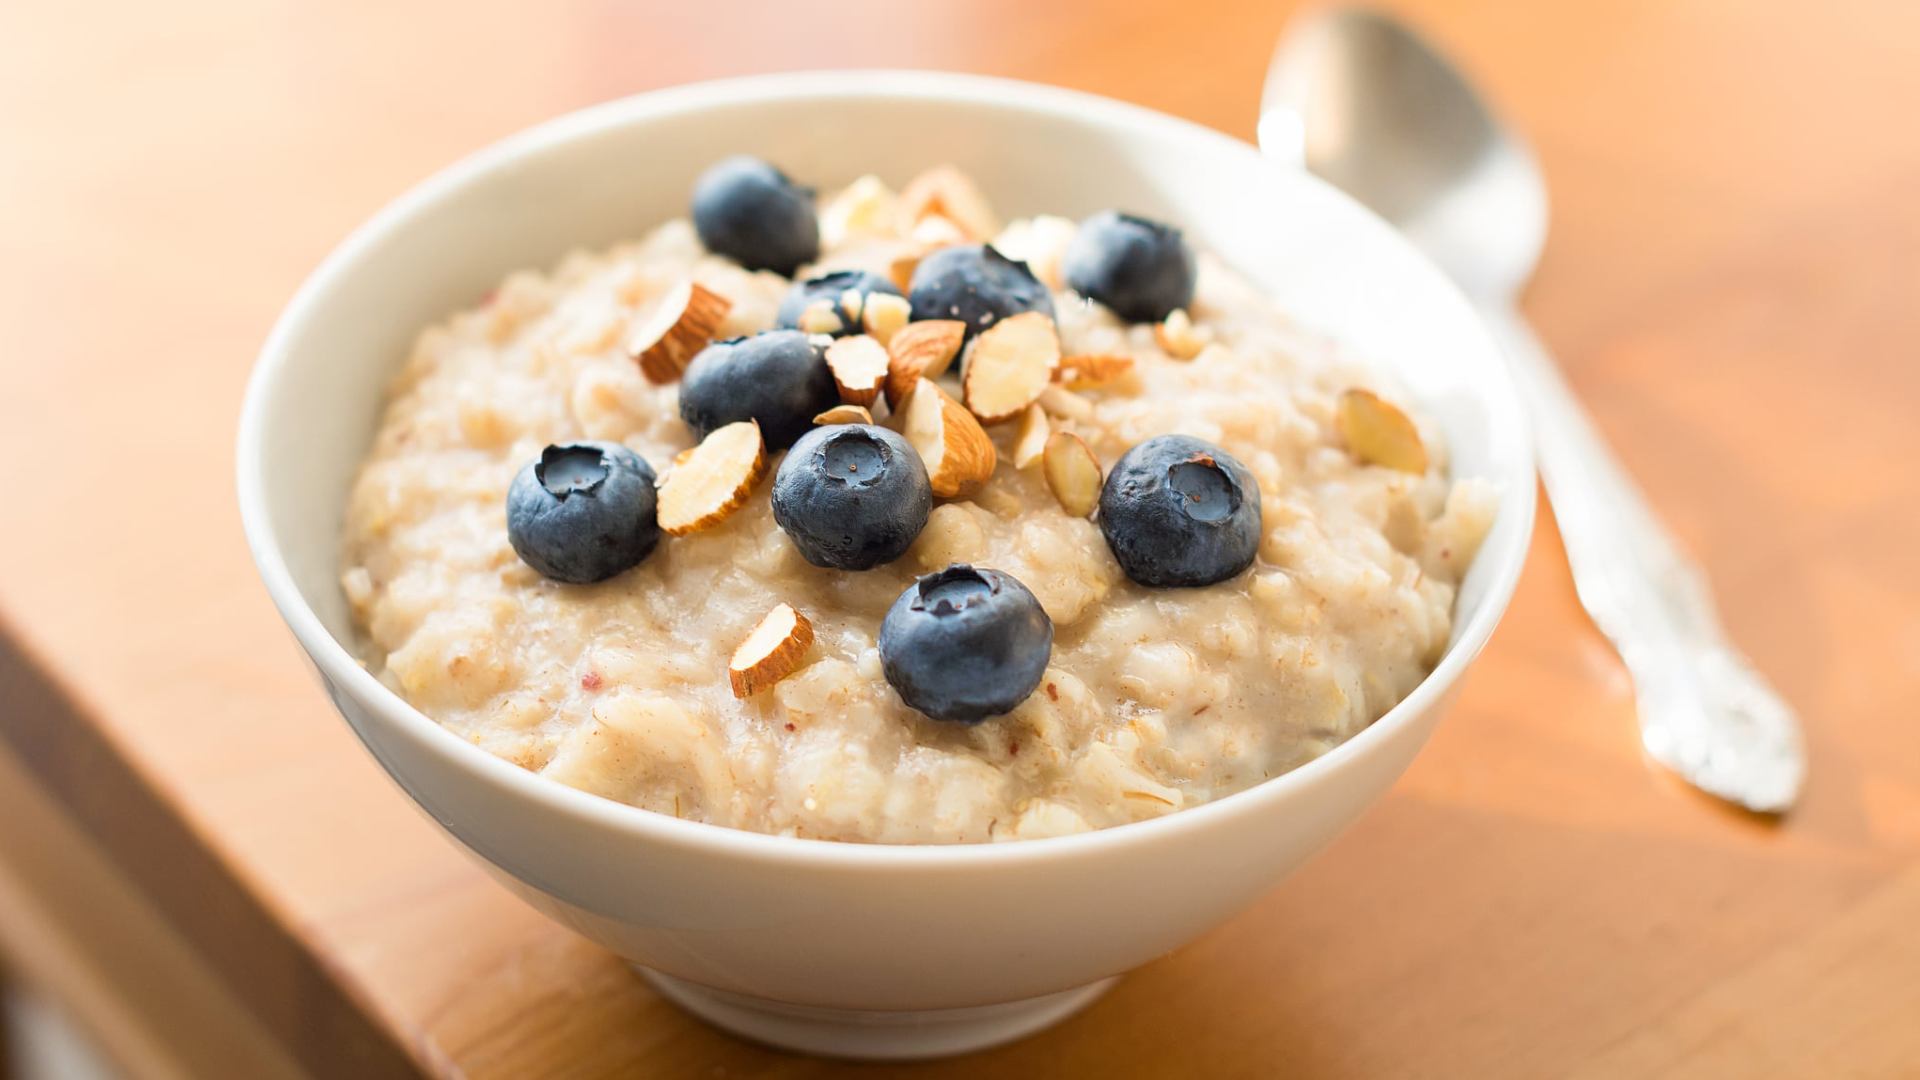 Oatmeal For Breakfast Lowers Risk Of Stroke